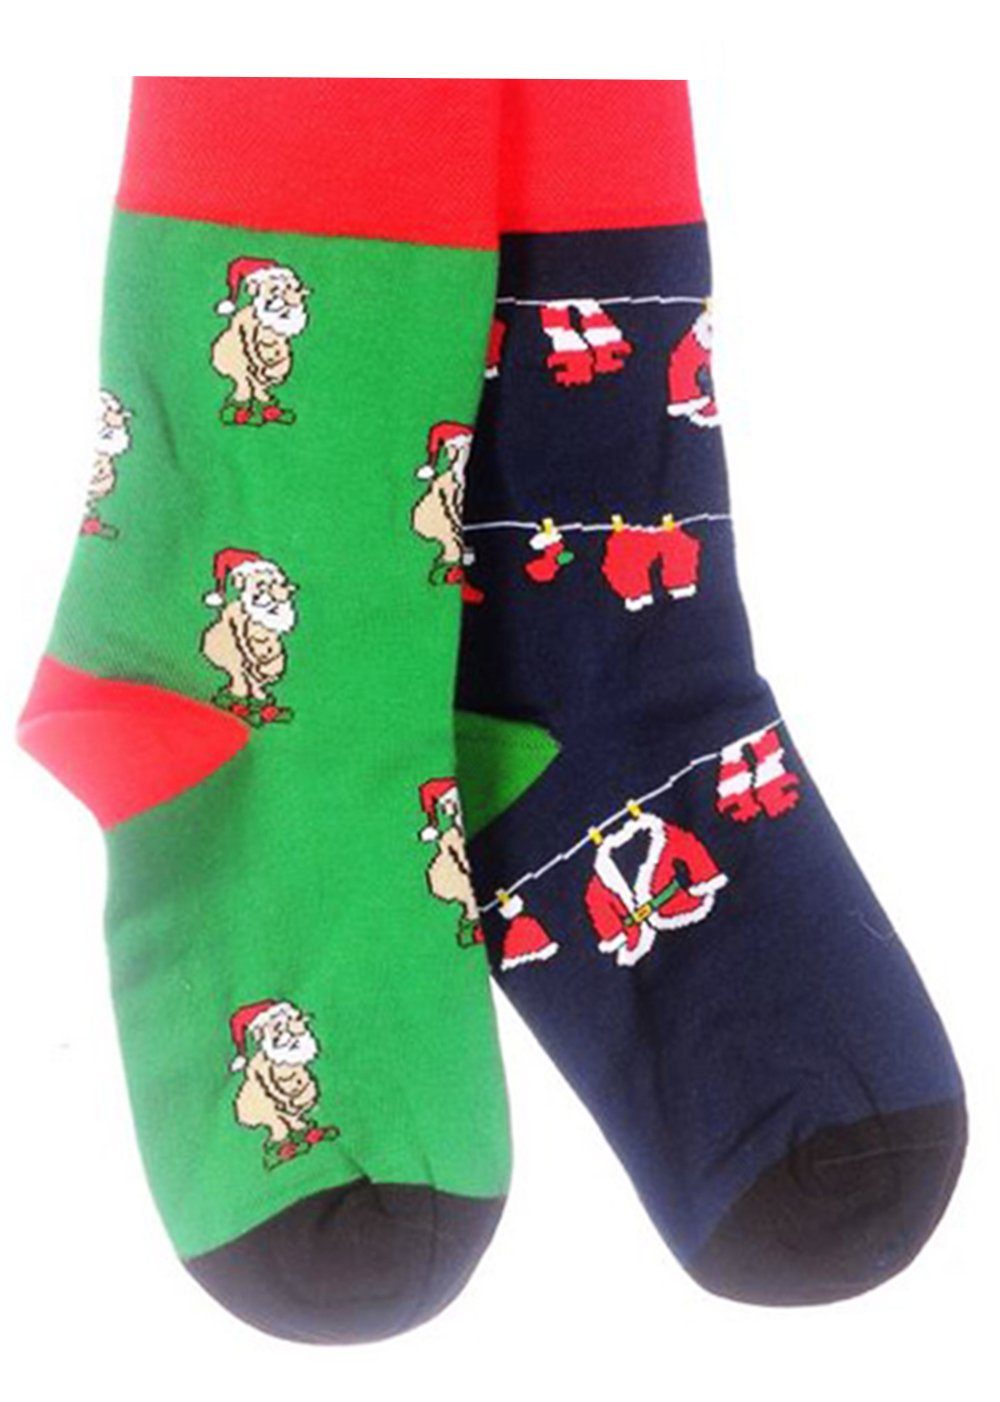 Martinex Socken Socken Freizeitsocken 1 Paar Socken Strümpfe 35 38 39 42 43 46 Weihnachtssocken, weihnachtlich, rot, nahtlos